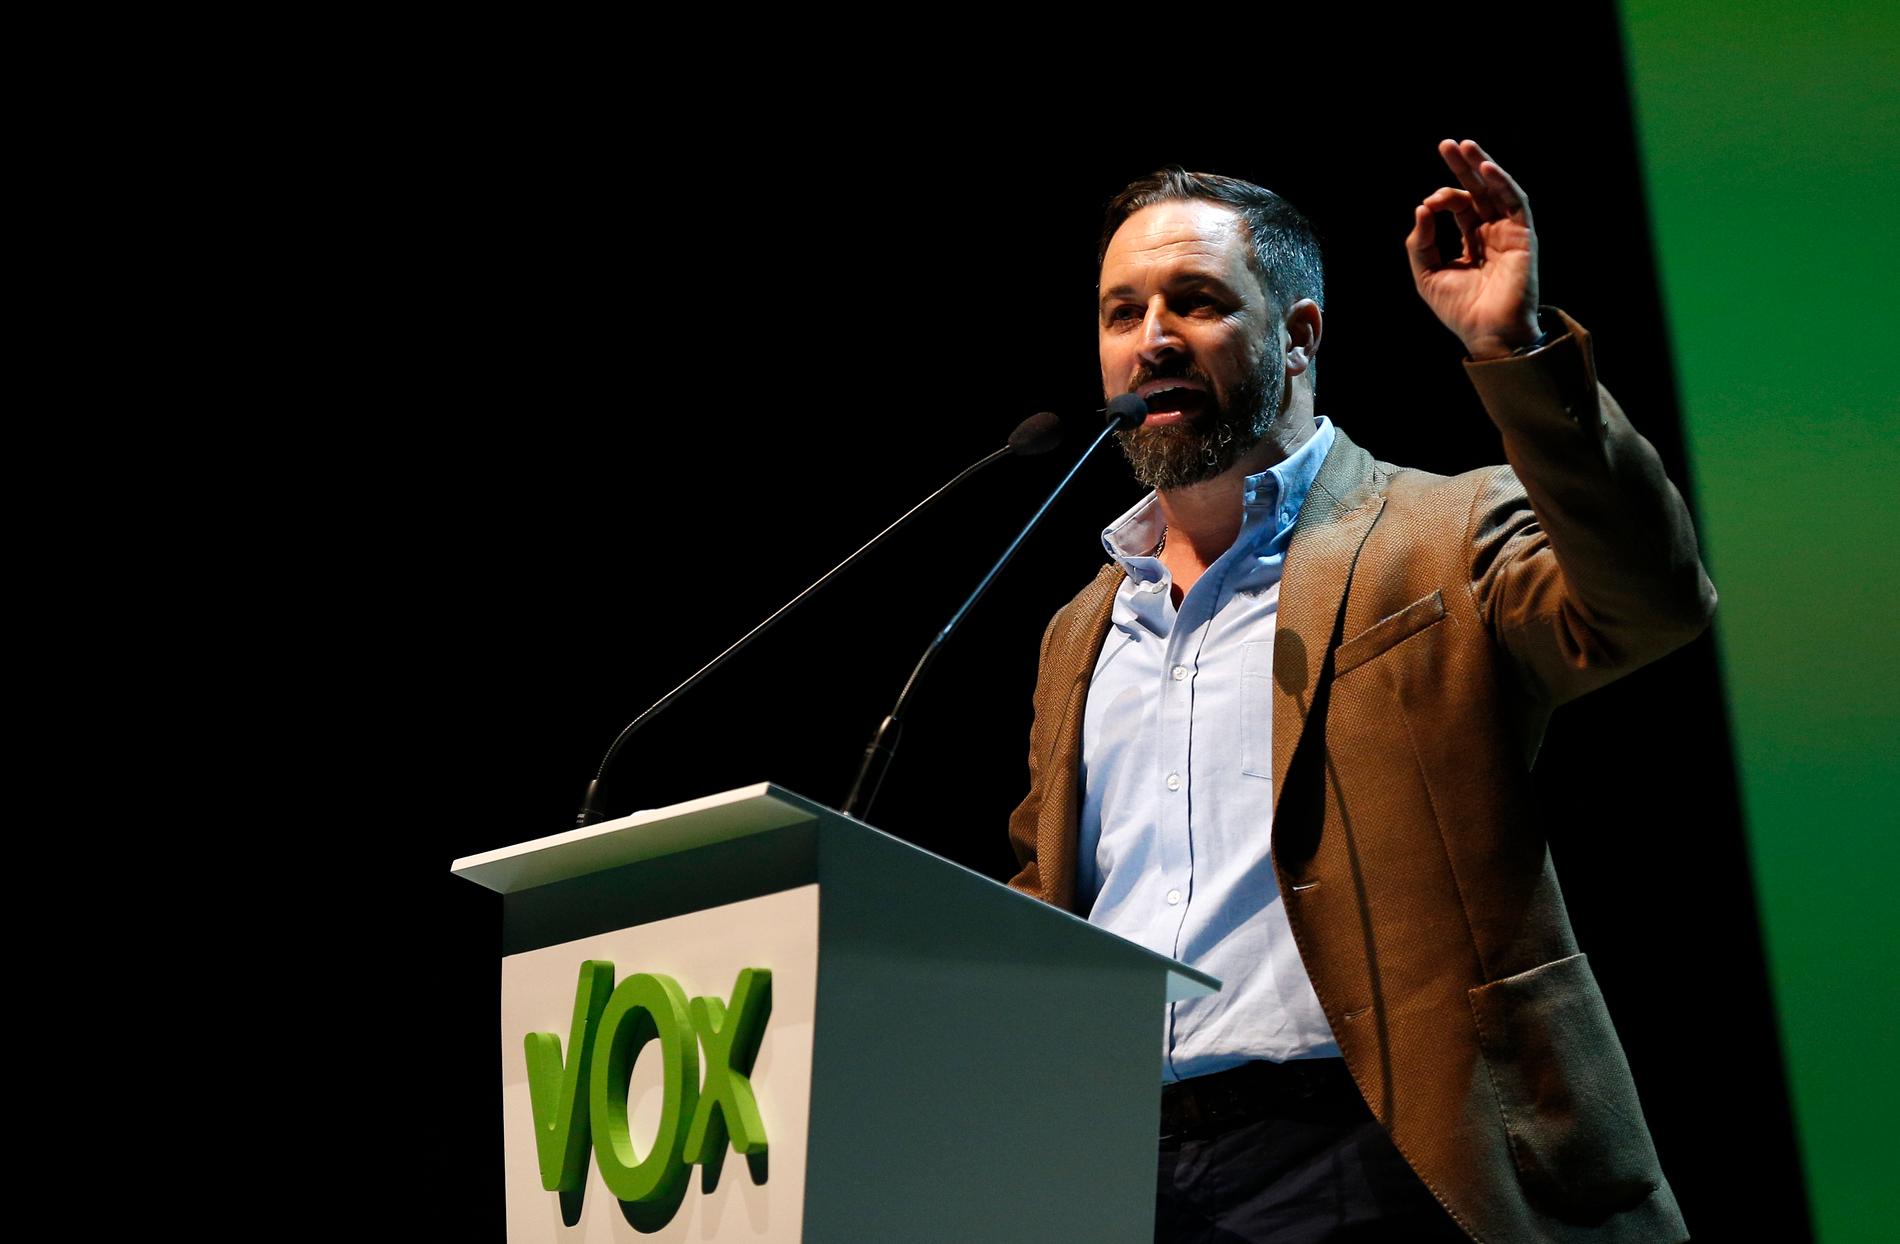 Santiago Abascal, partiledare för det högerextrema partiet Vox i Spanien, vid ett stort partimöte nyligen.